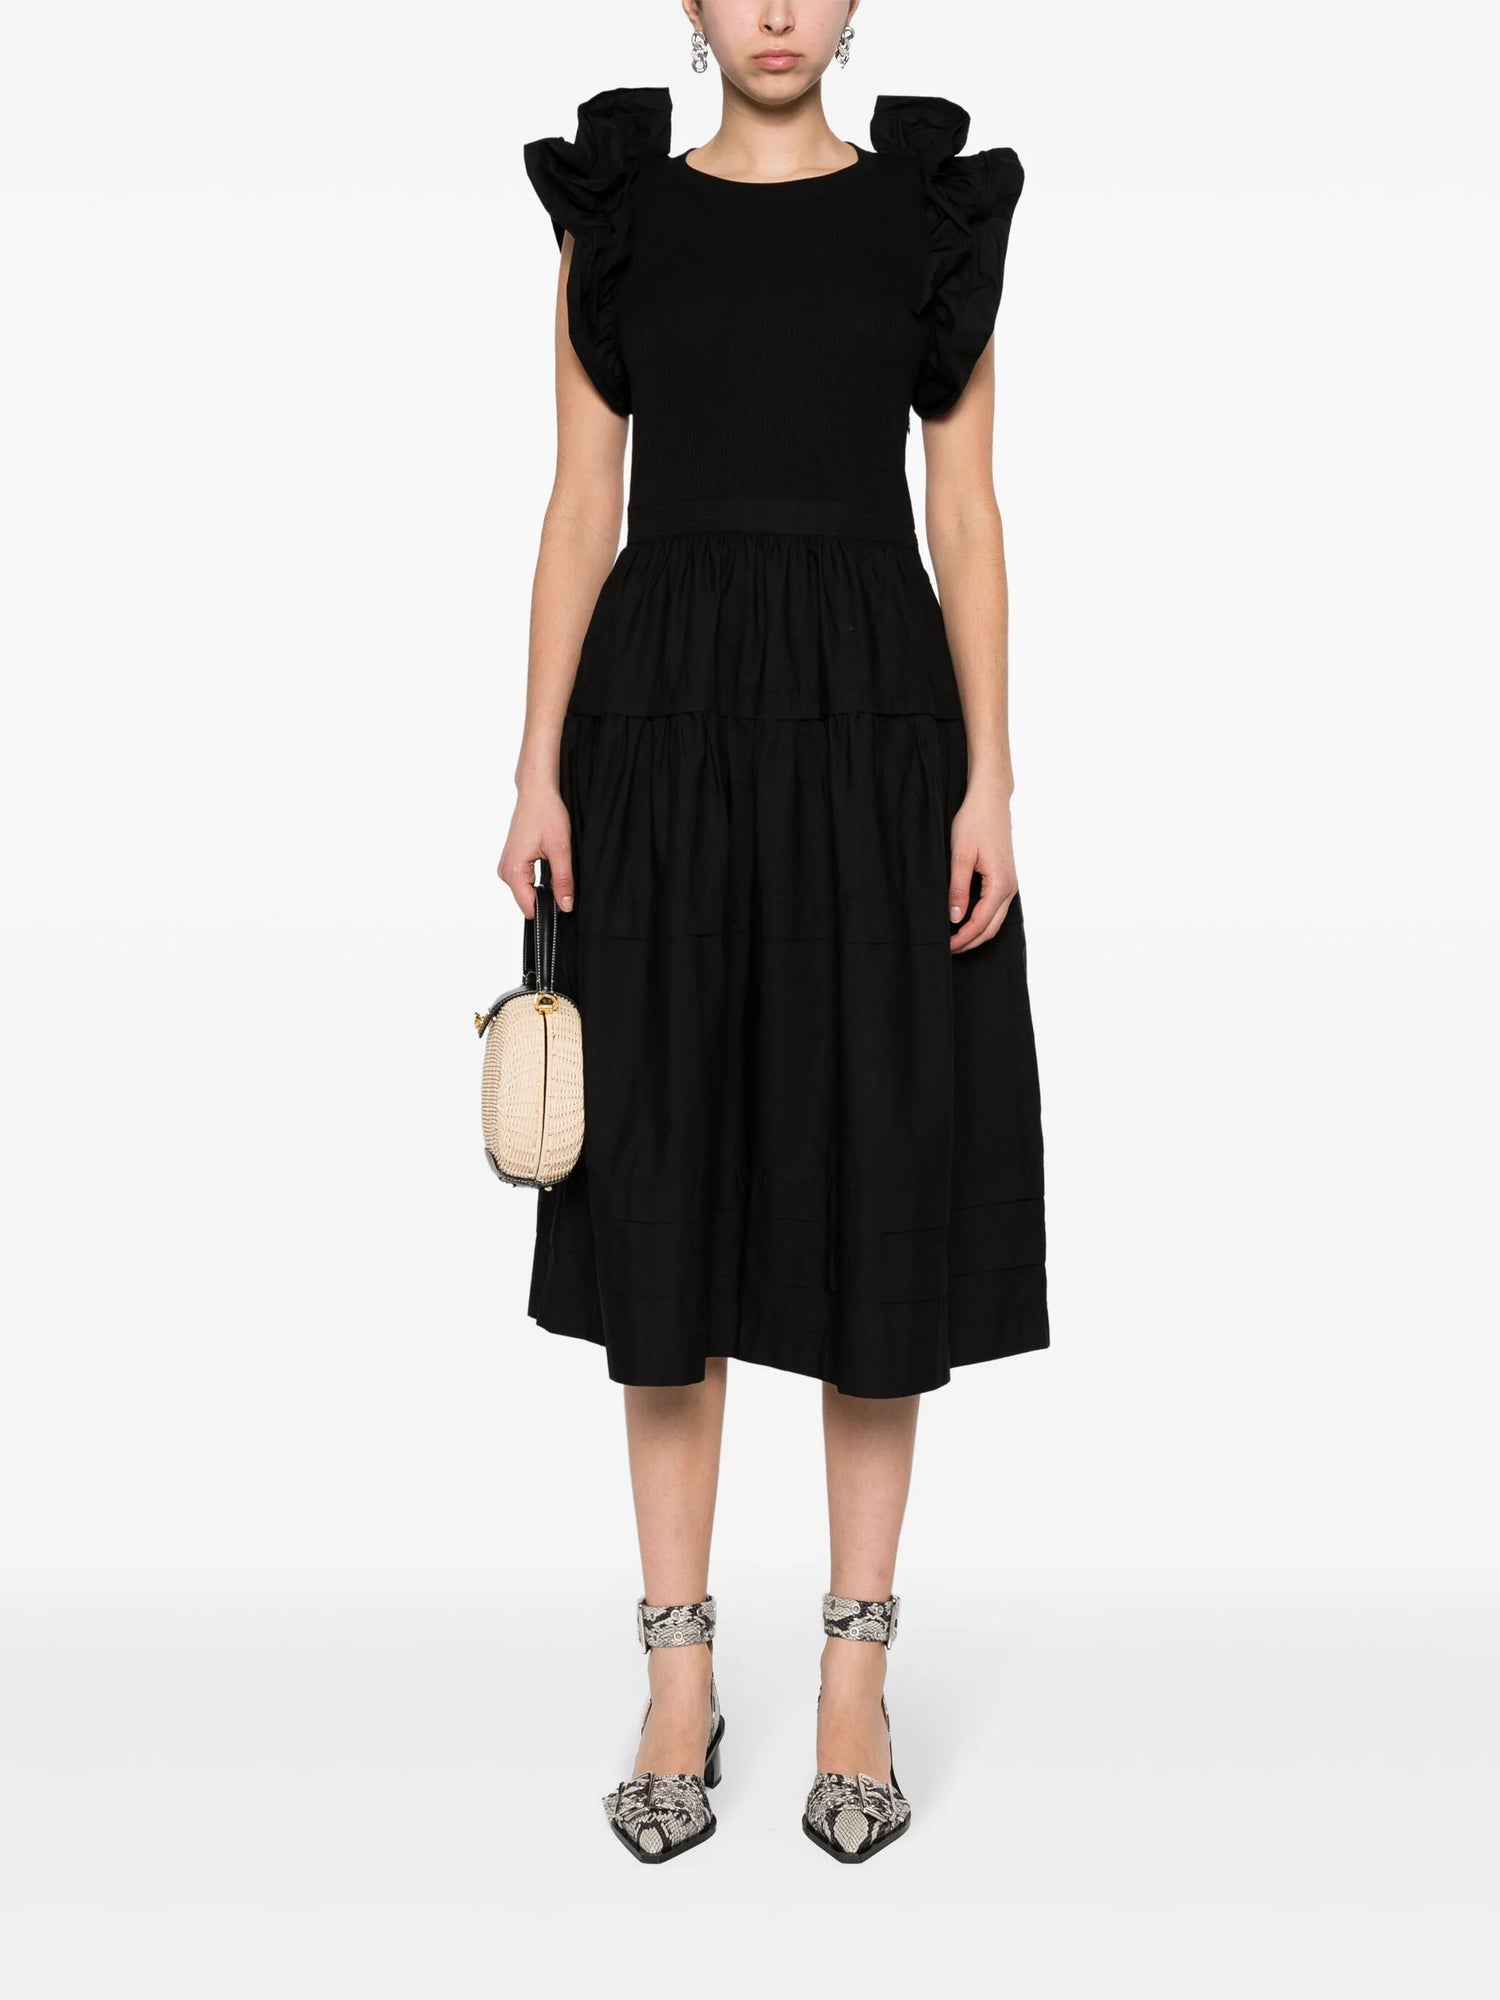 Francine Dress, black